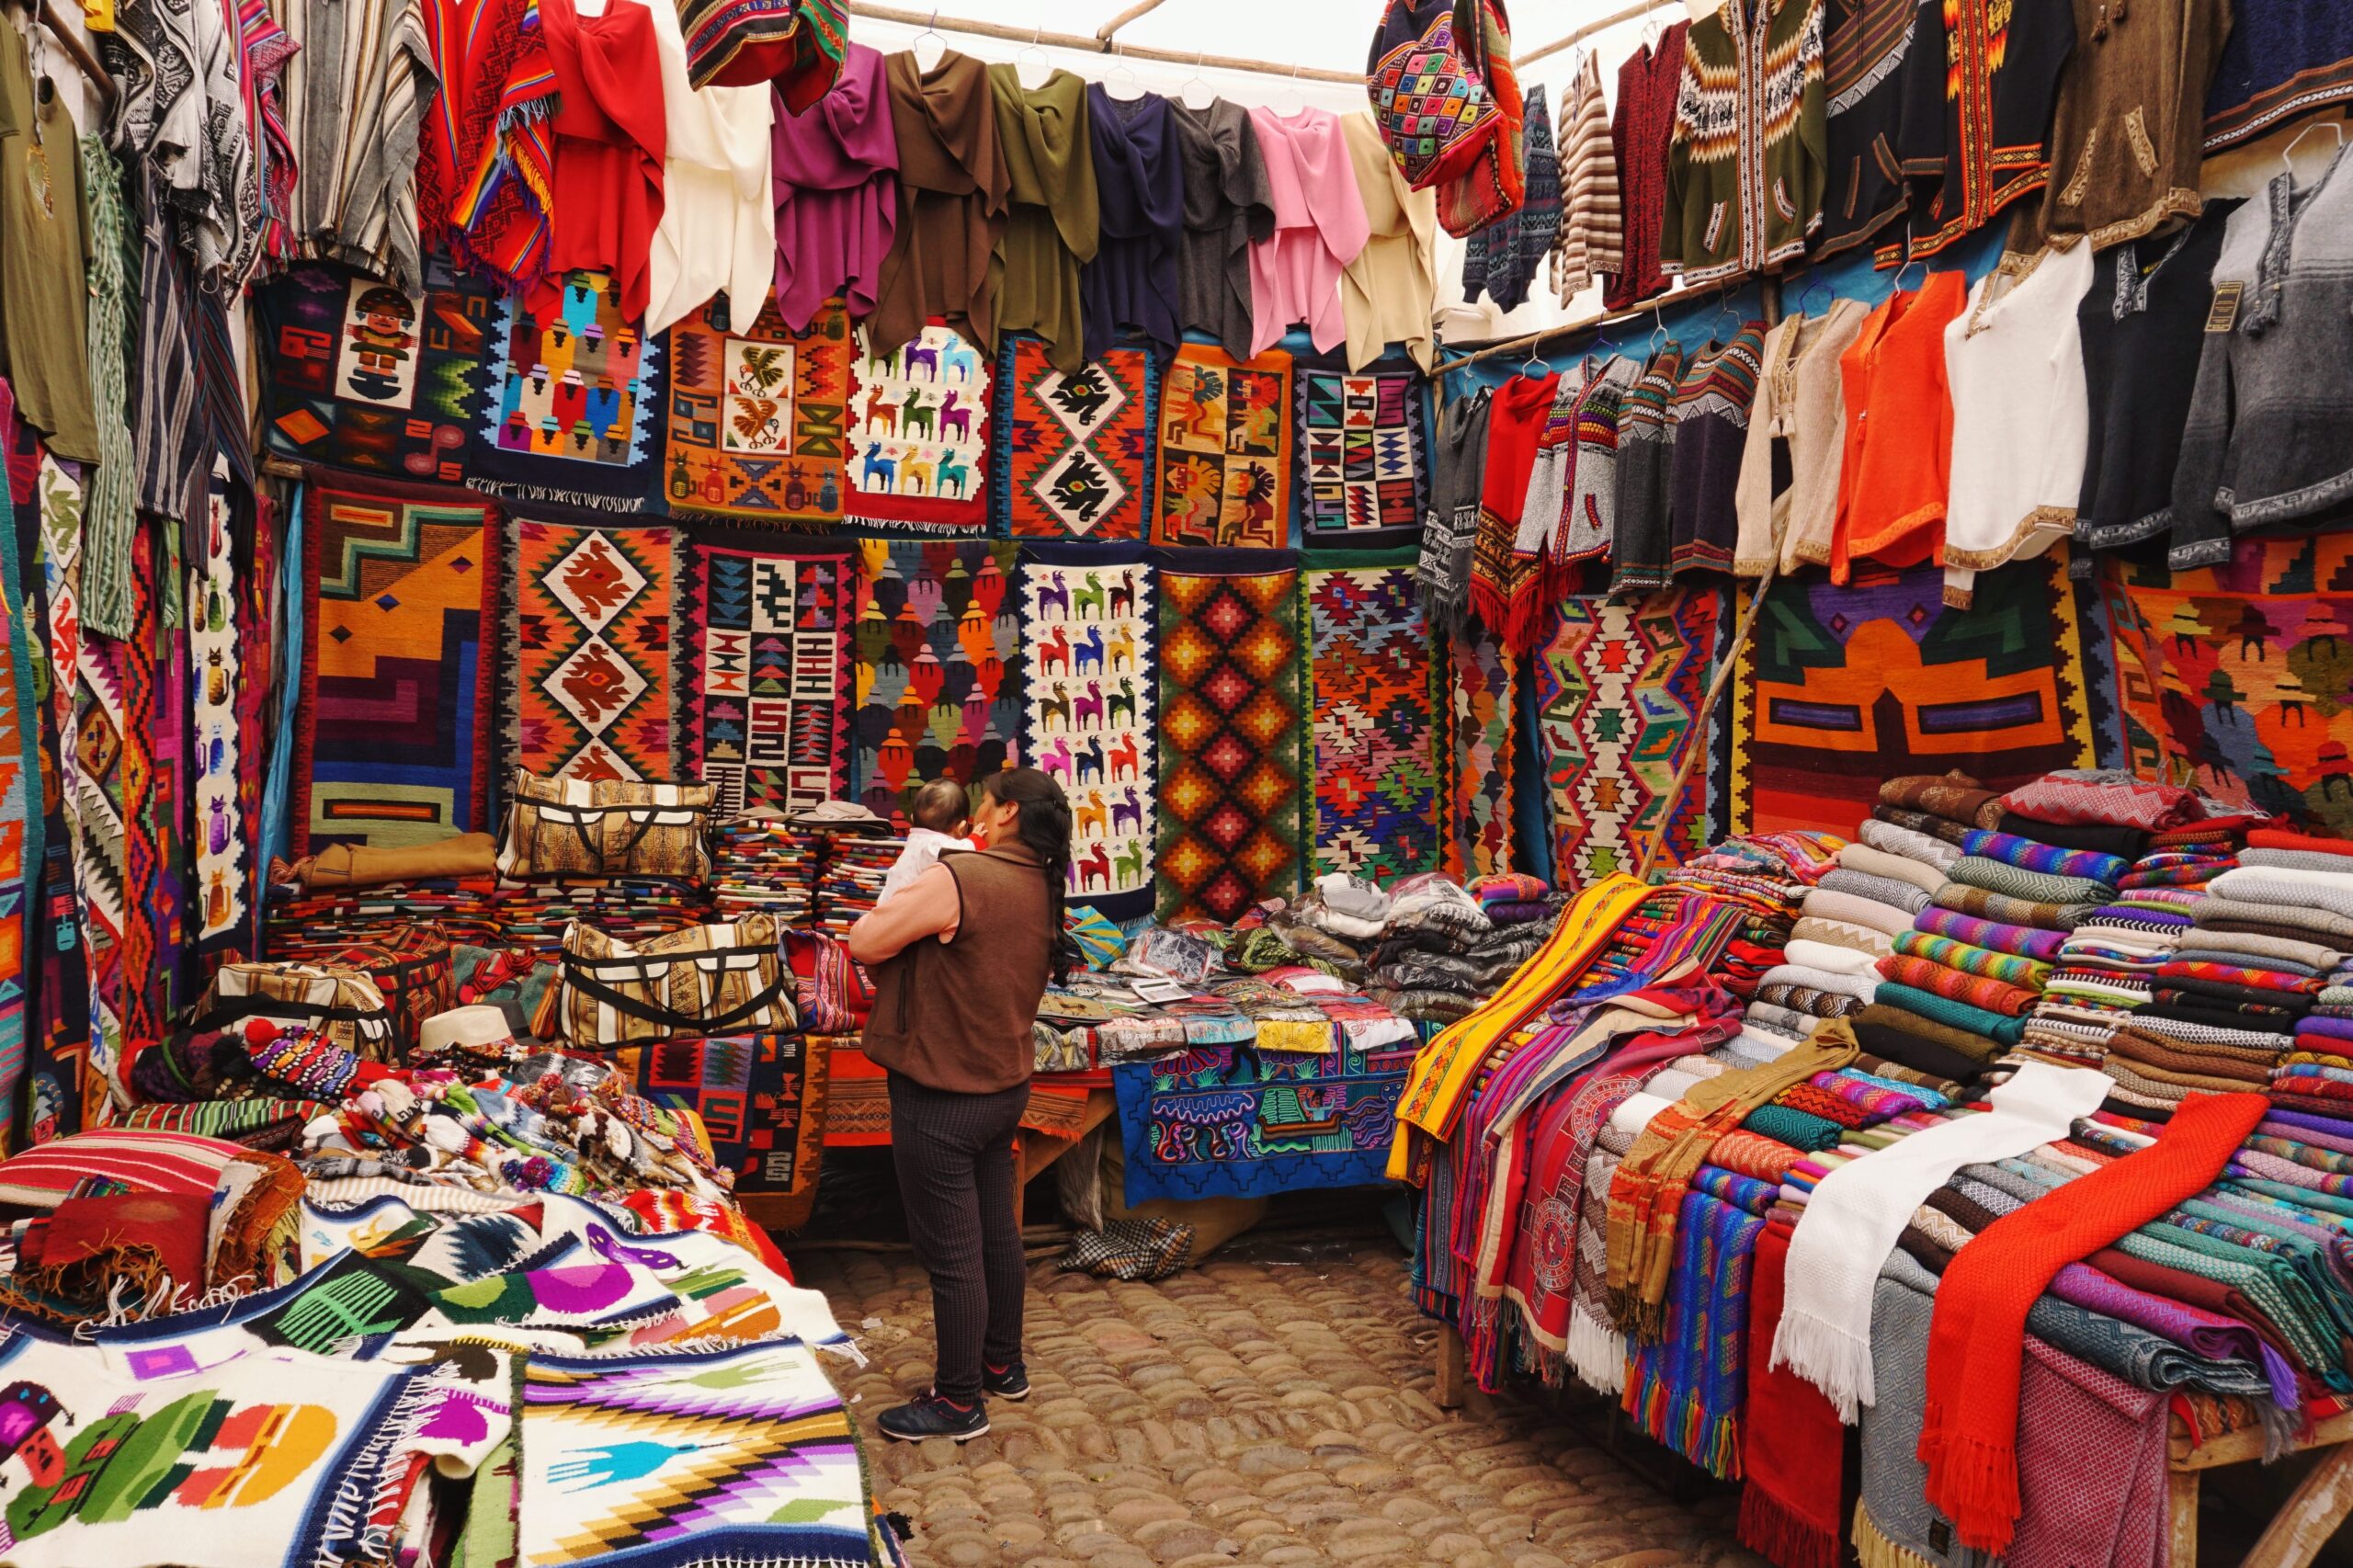 A Fabric Store in Peru